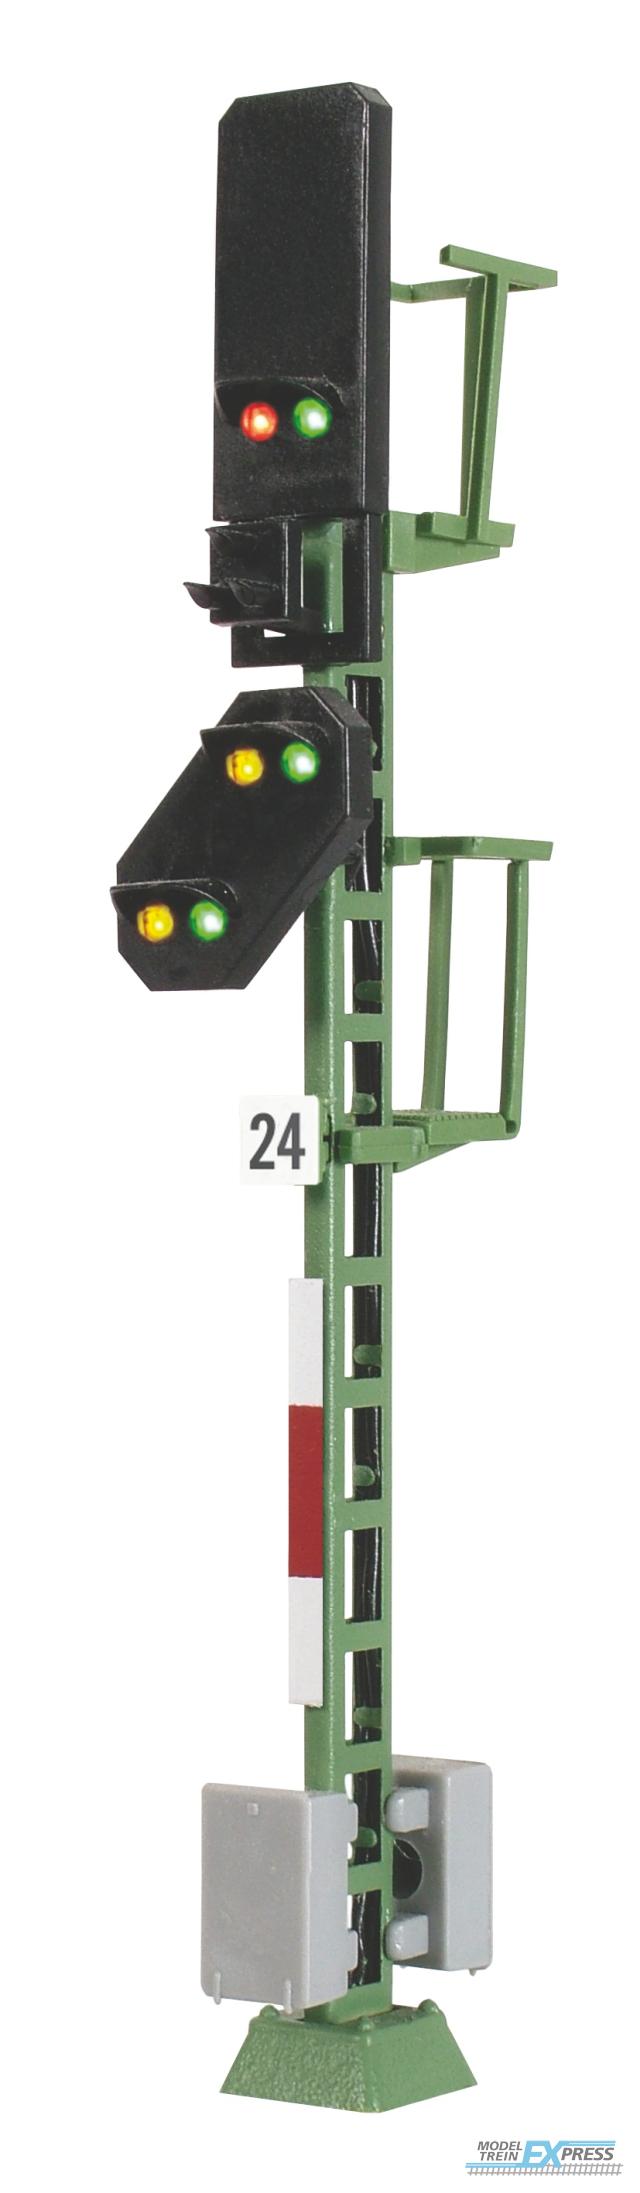 Viessmann 4724 H0 Licht-Blocksignal mit Vorsignal und Multiplex-Technologie